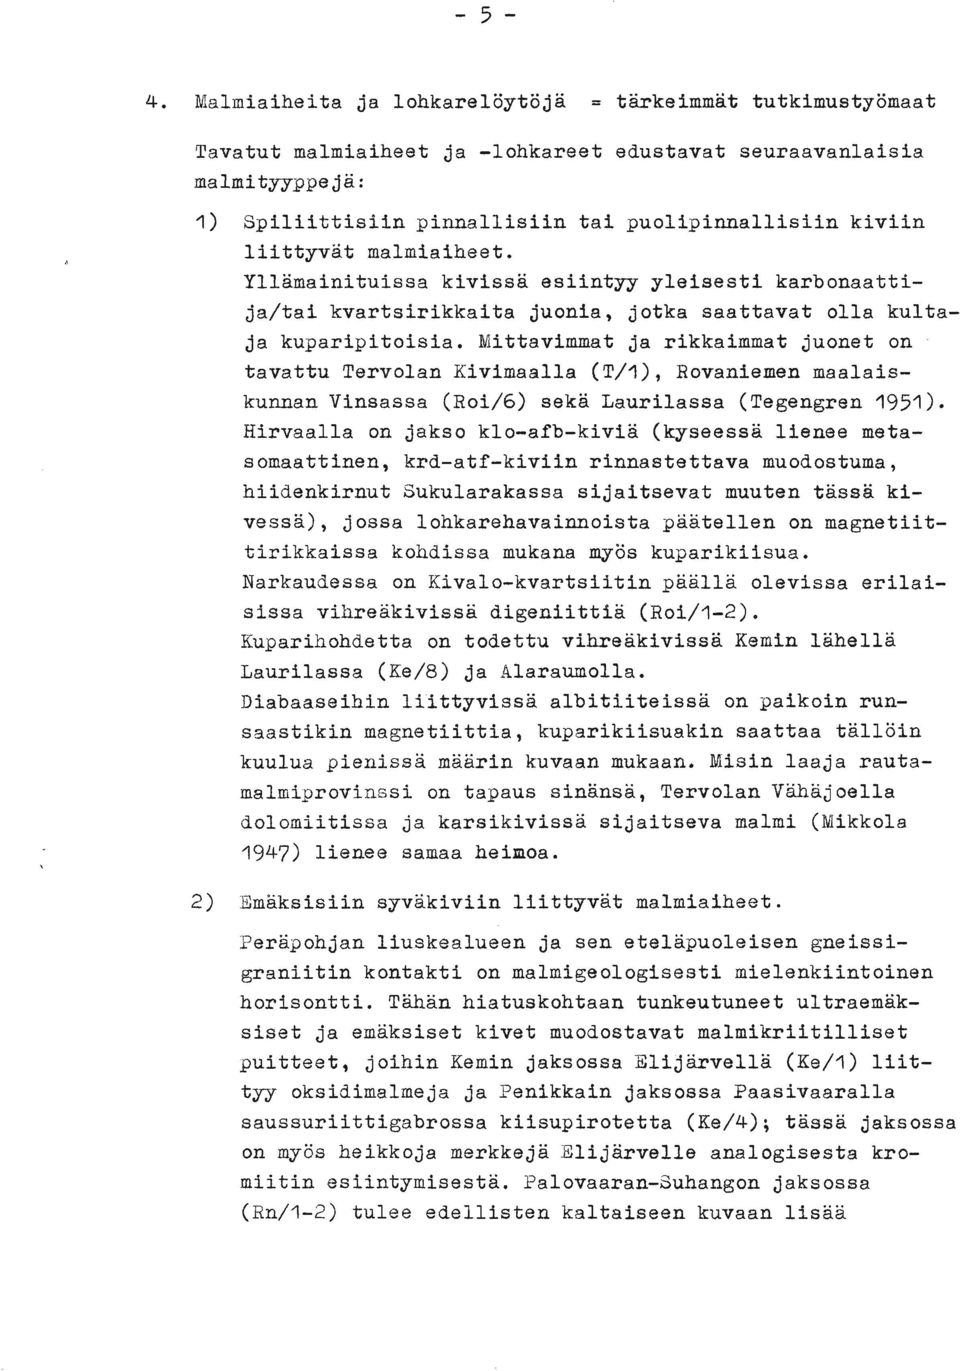 Mittavimmat ja rikkaimmat juonet on tavattu Tervolan Kivimaalla (T/1), Rovaniemen maalaiskunnan Vinsassa (Roi/6) seka Laurilassa (Tegengren 1951).